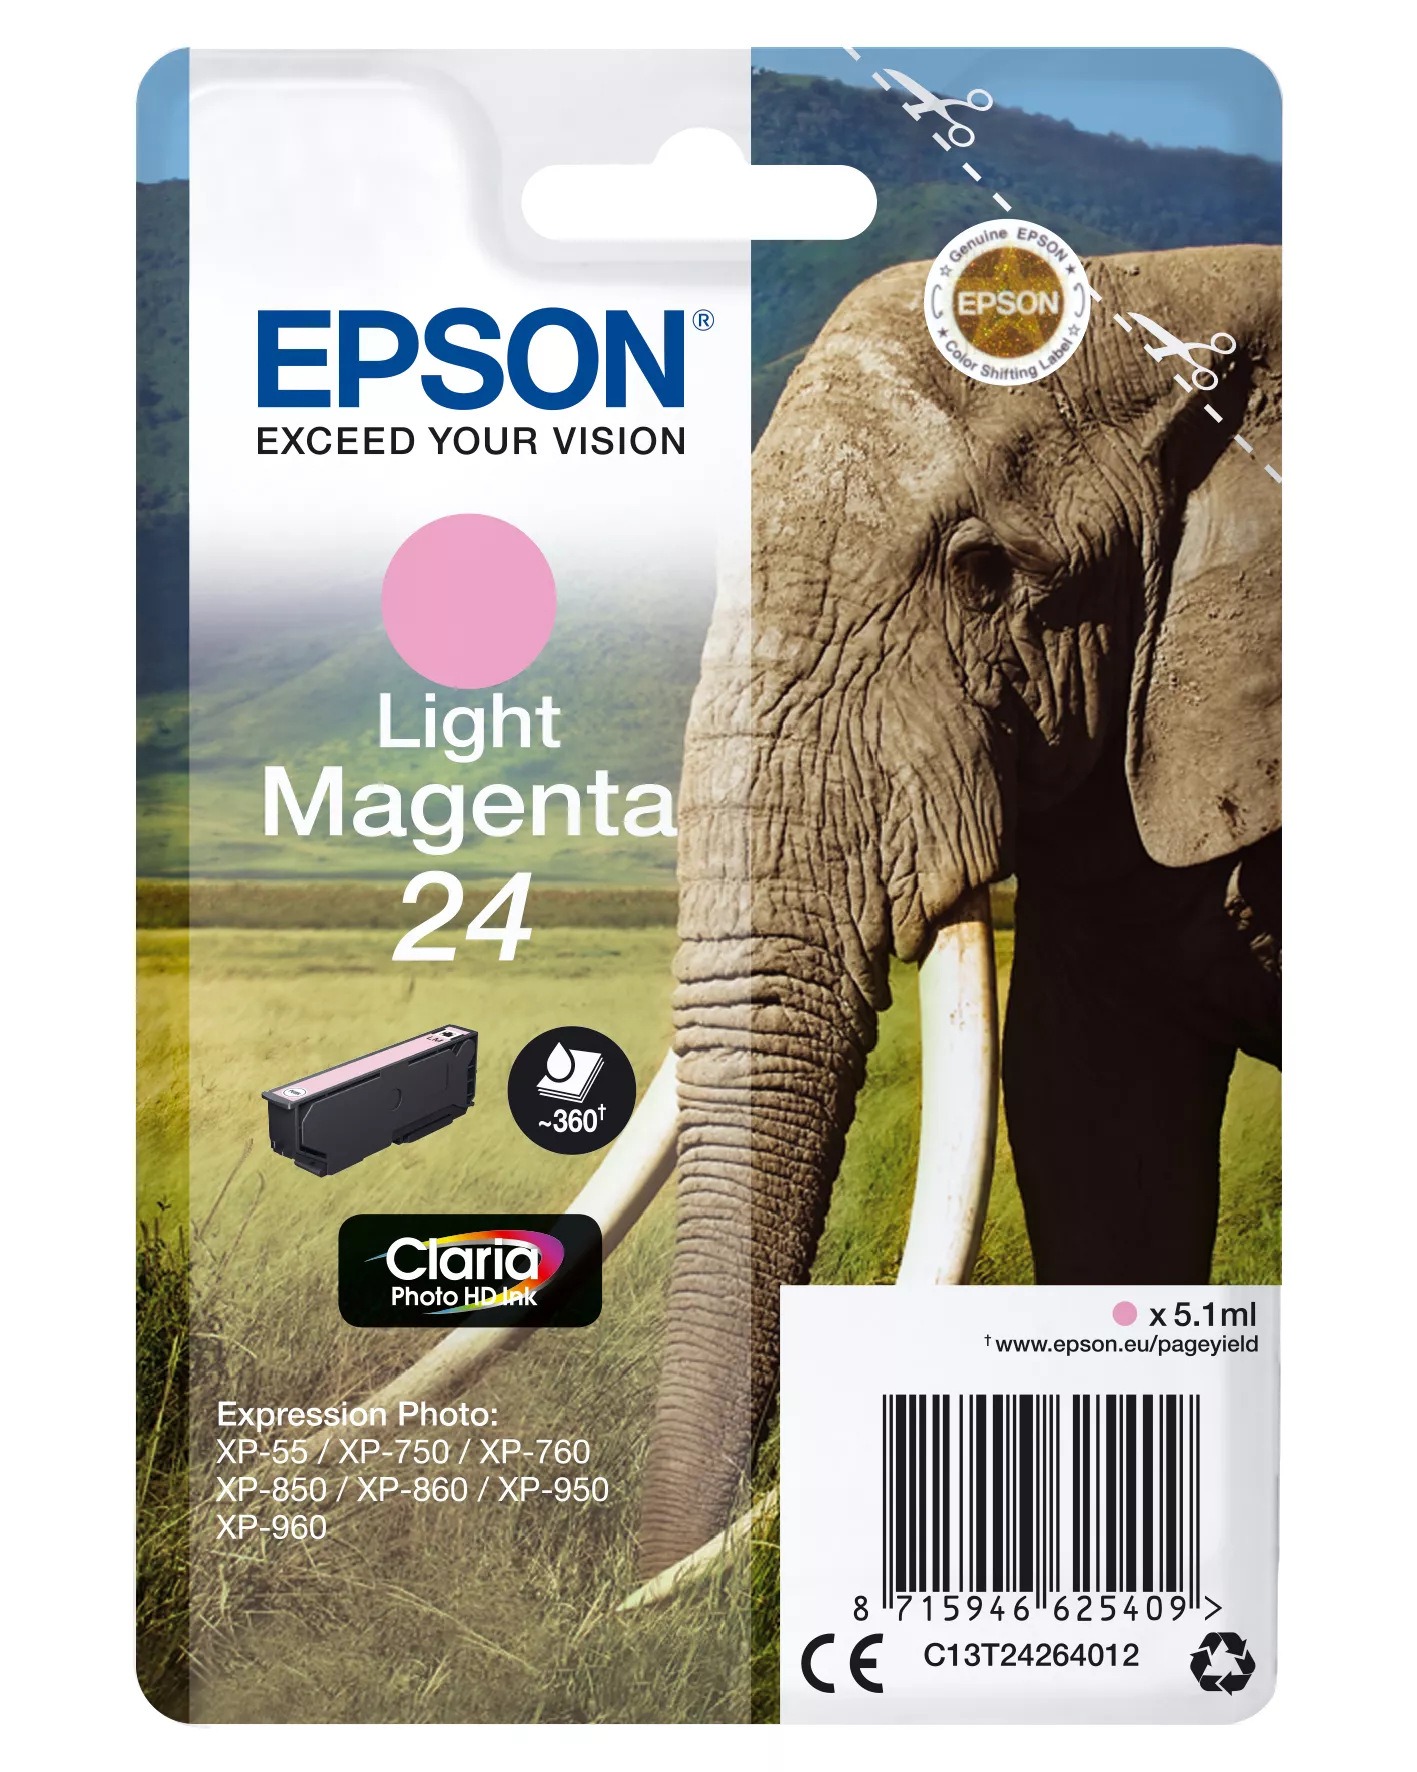 Achat EPSON 24 cartouche d encre magenta clair capacité standard sur hello RSE